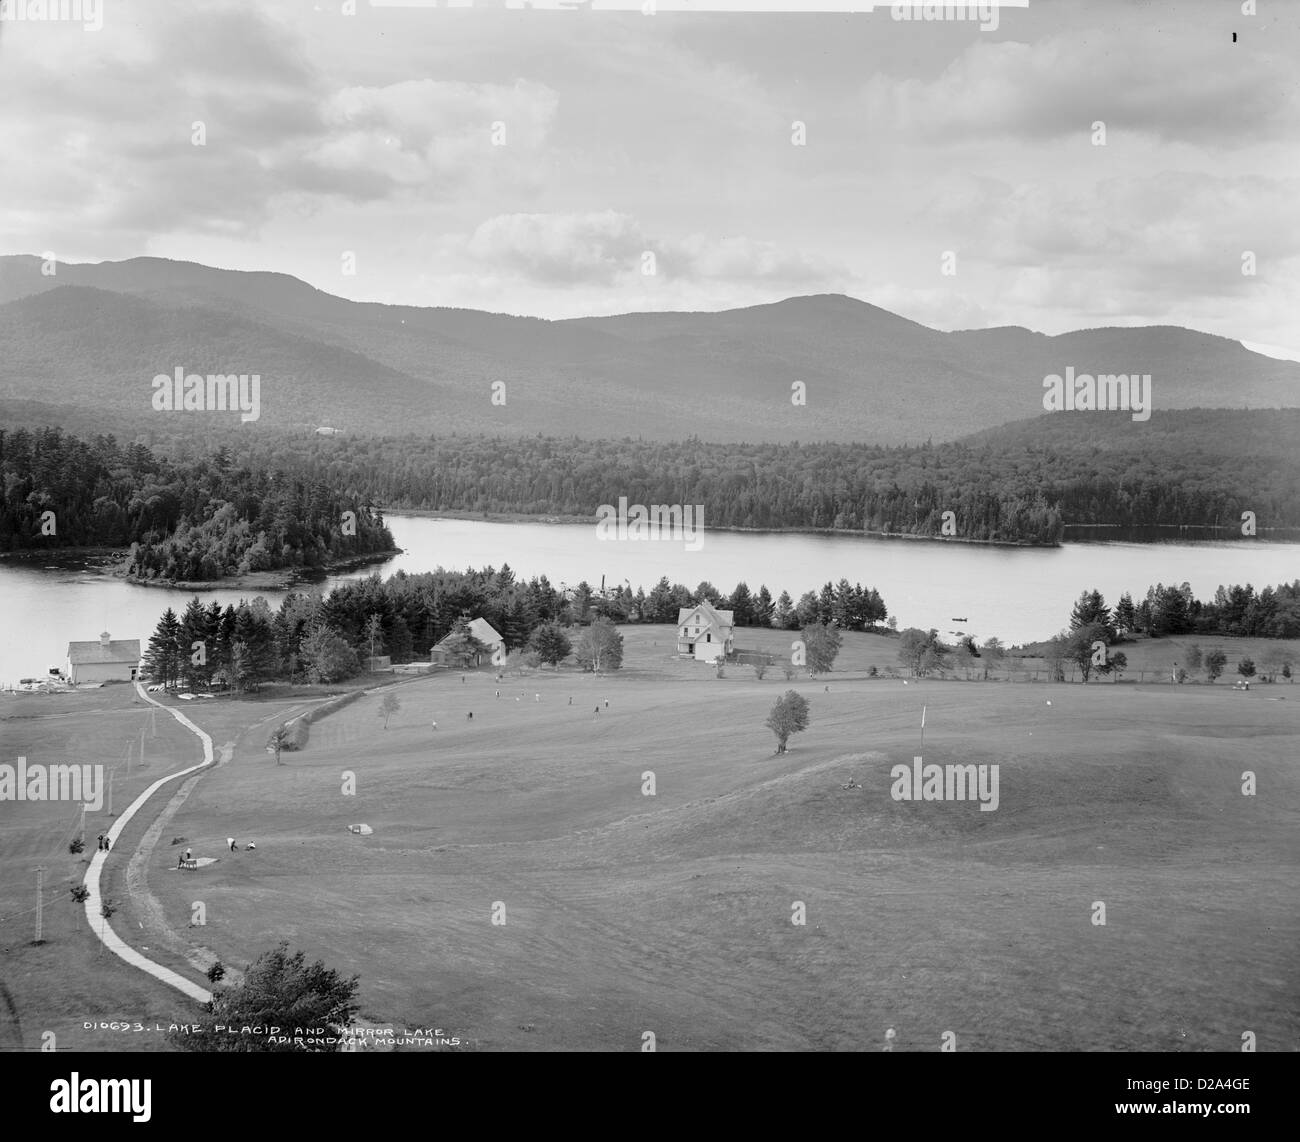 Lake Placid und Mirror Lake, Adirondack Mountains. [Zwischen 1901 und 1906] William Henry Jackson, 1843 – 1942 Fotograf Stockfoto